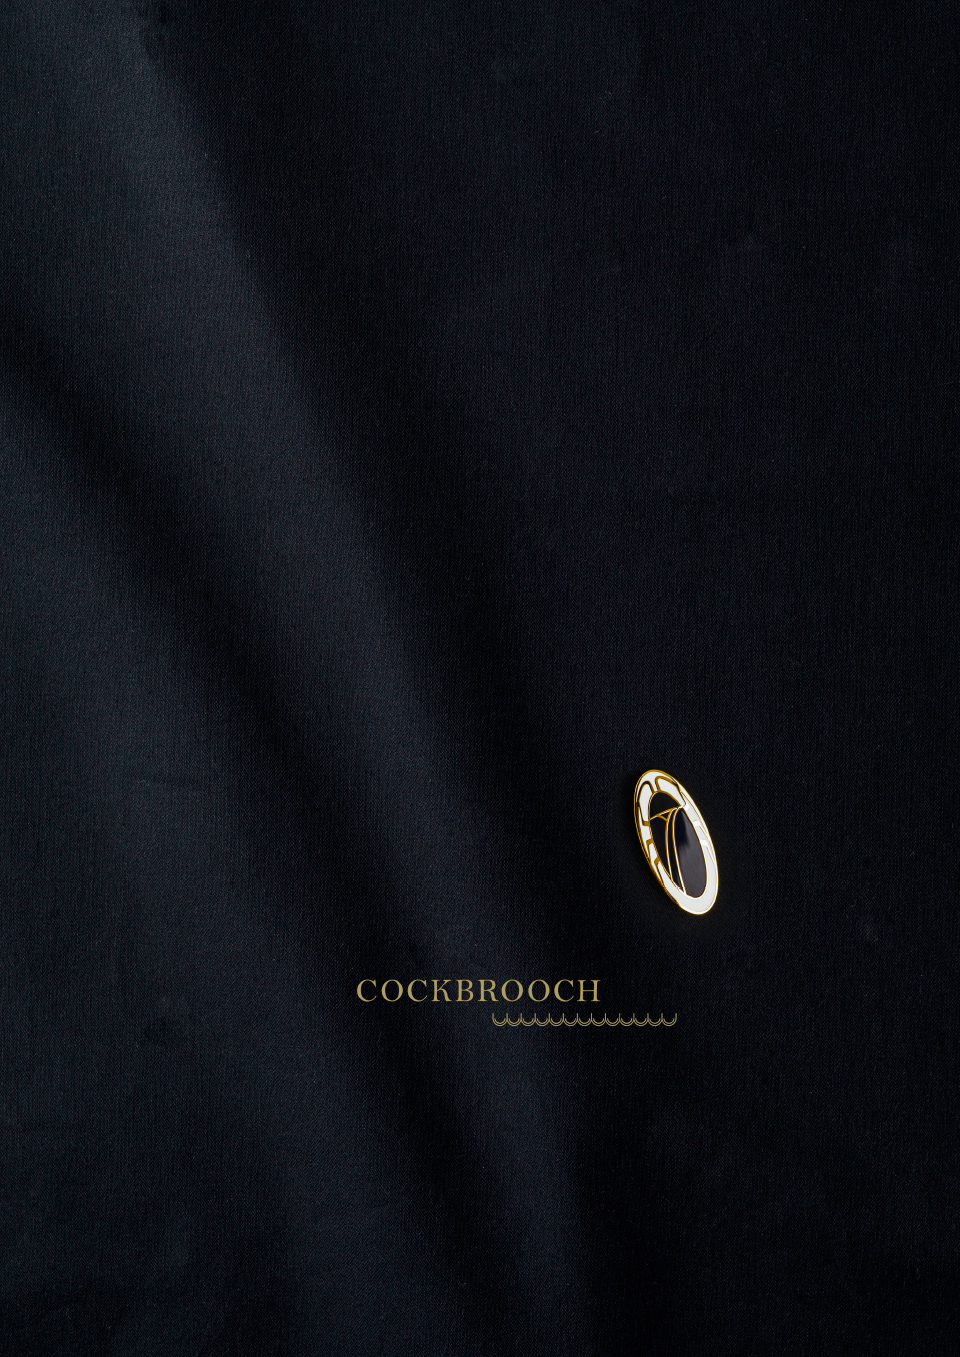 cochbroach_06